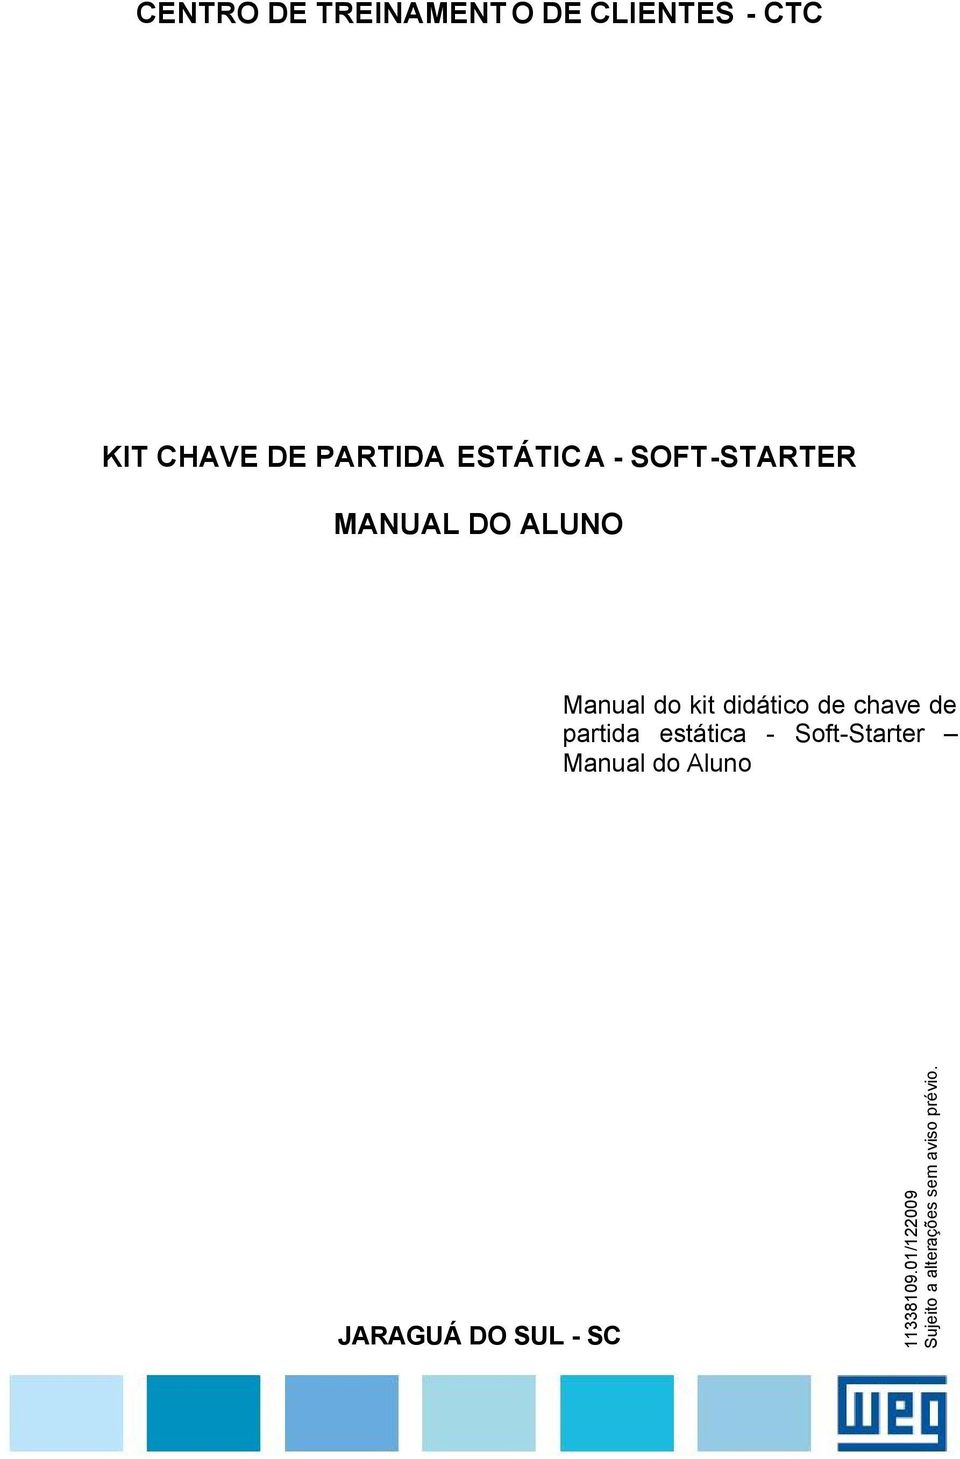 chave de partida estática - Soft-Starter Manual do Aluno JARAGUÁ